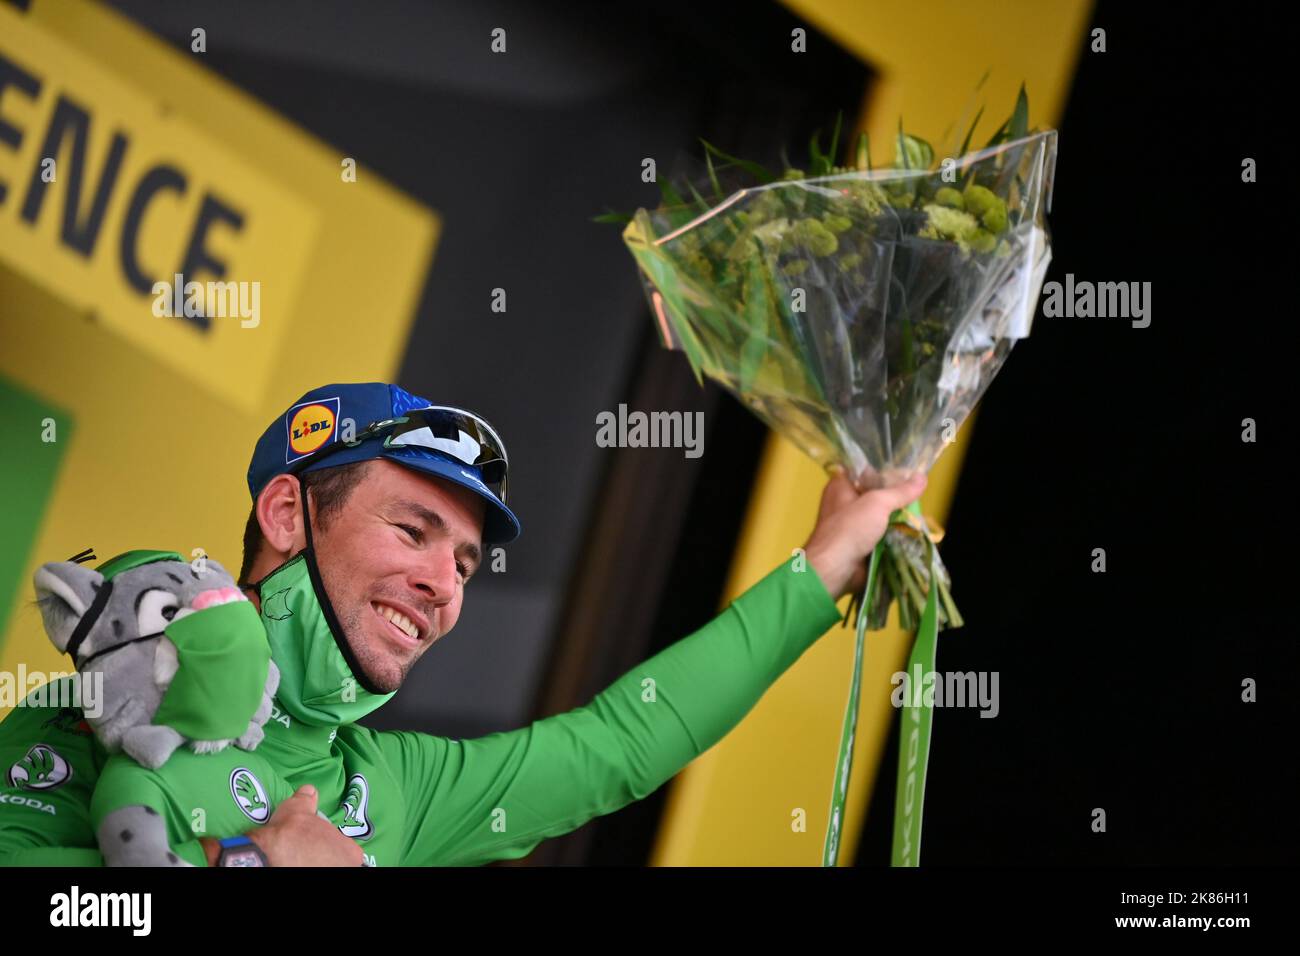 Mark Cavendish (GBR) von DECEUNINCK - QUICK - STEP behält seine Führung in der Punktekategorie, nachdem er die Etappe im Sprint der Etappe 10 der Tour de France gewonnen hat Stockfoto